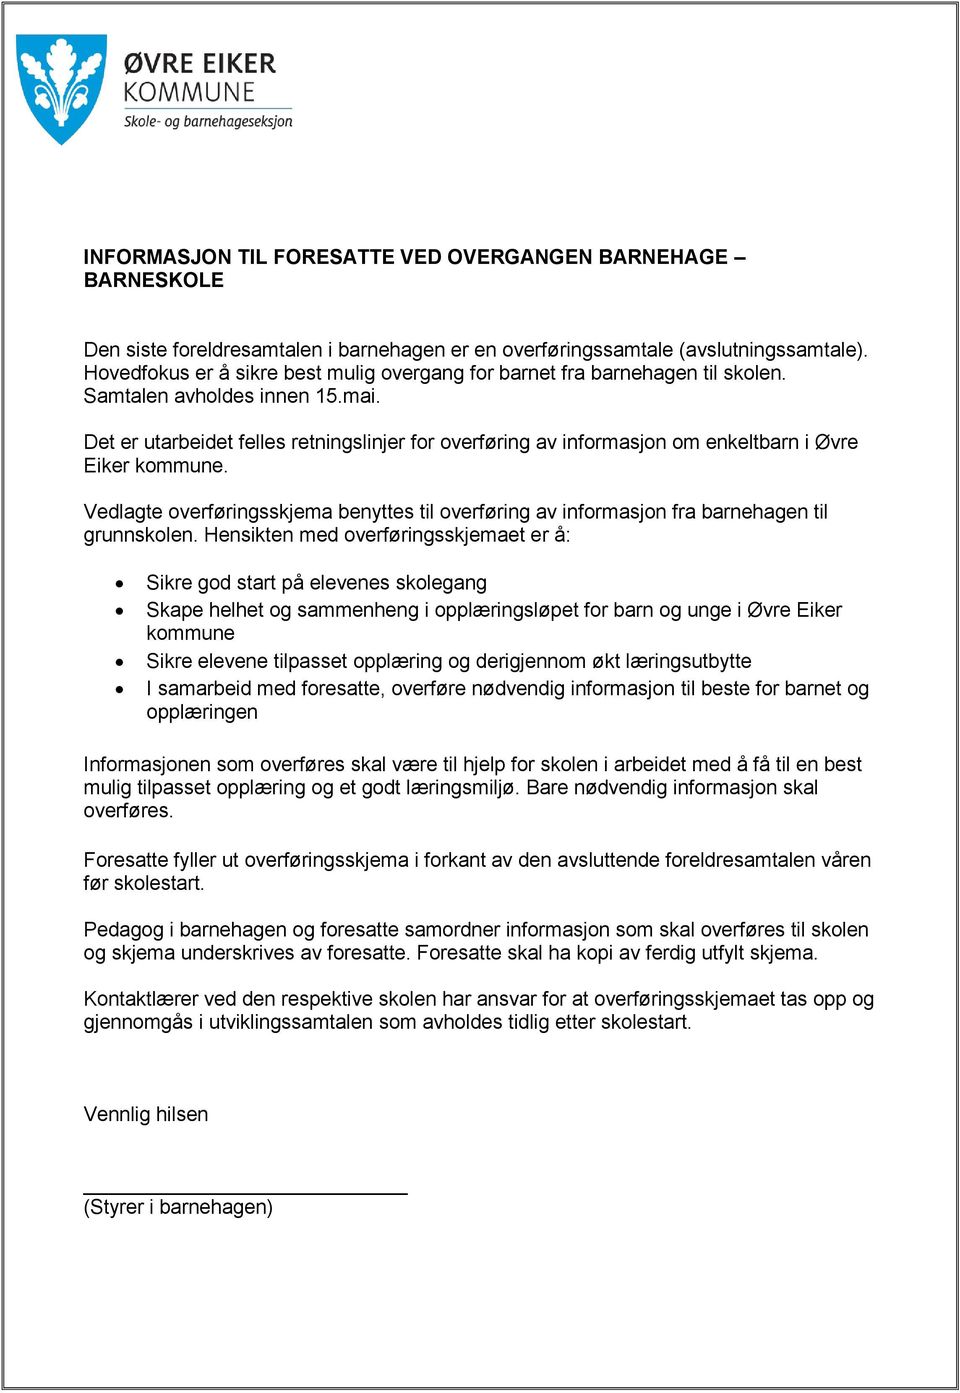 Det er utarbeidet felles retningslinjer for overføring av informasjon om enkeltbarn i Øvre Eiker kommune.